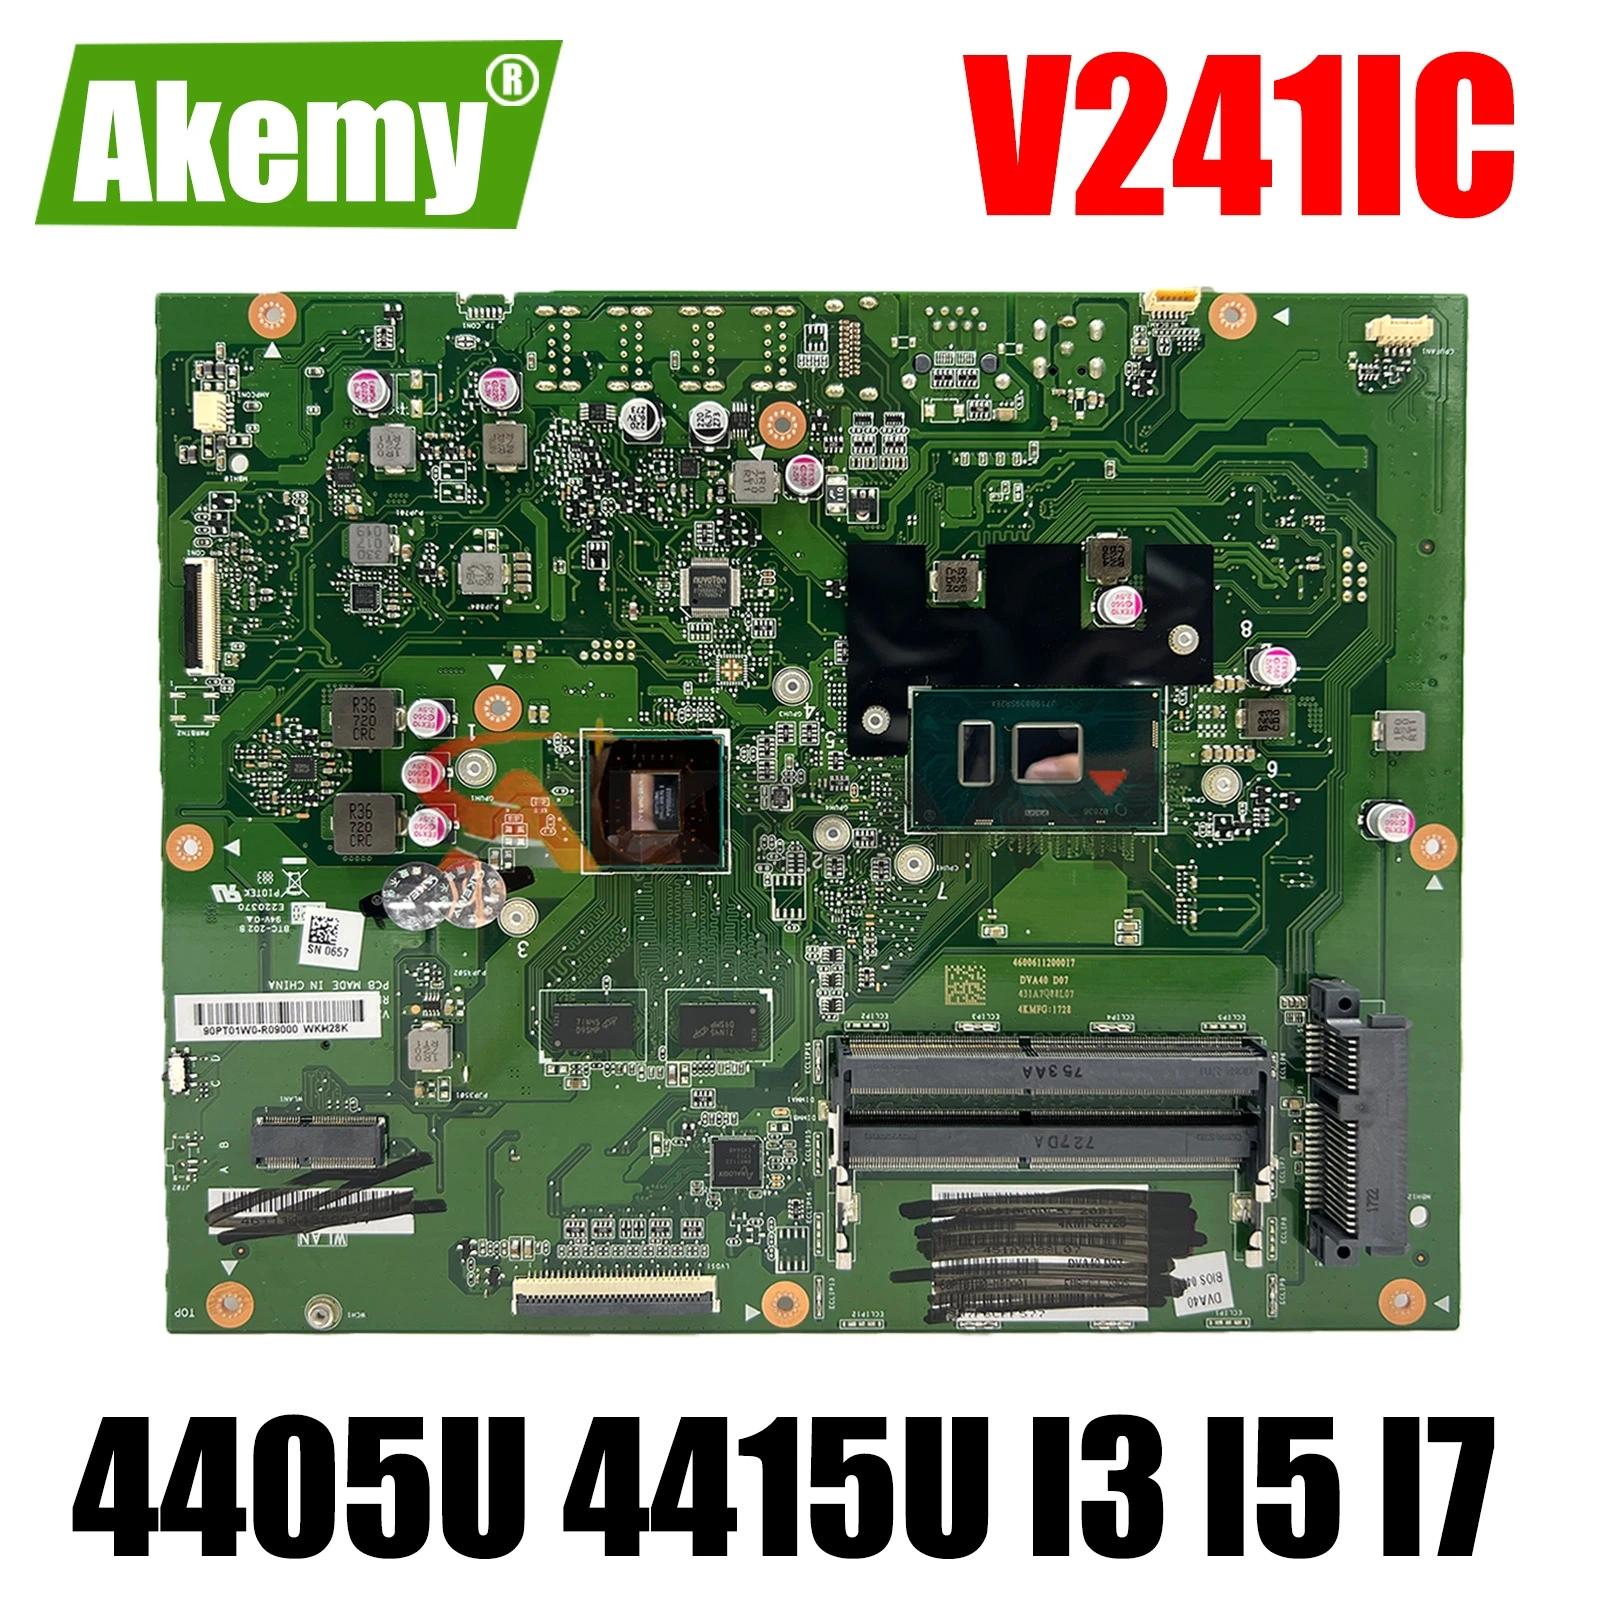 AKEMY V241IC , Asus V241I V241IC κ, 4405U 4415U I3 I5 I7 CPU, 930MX/UMA